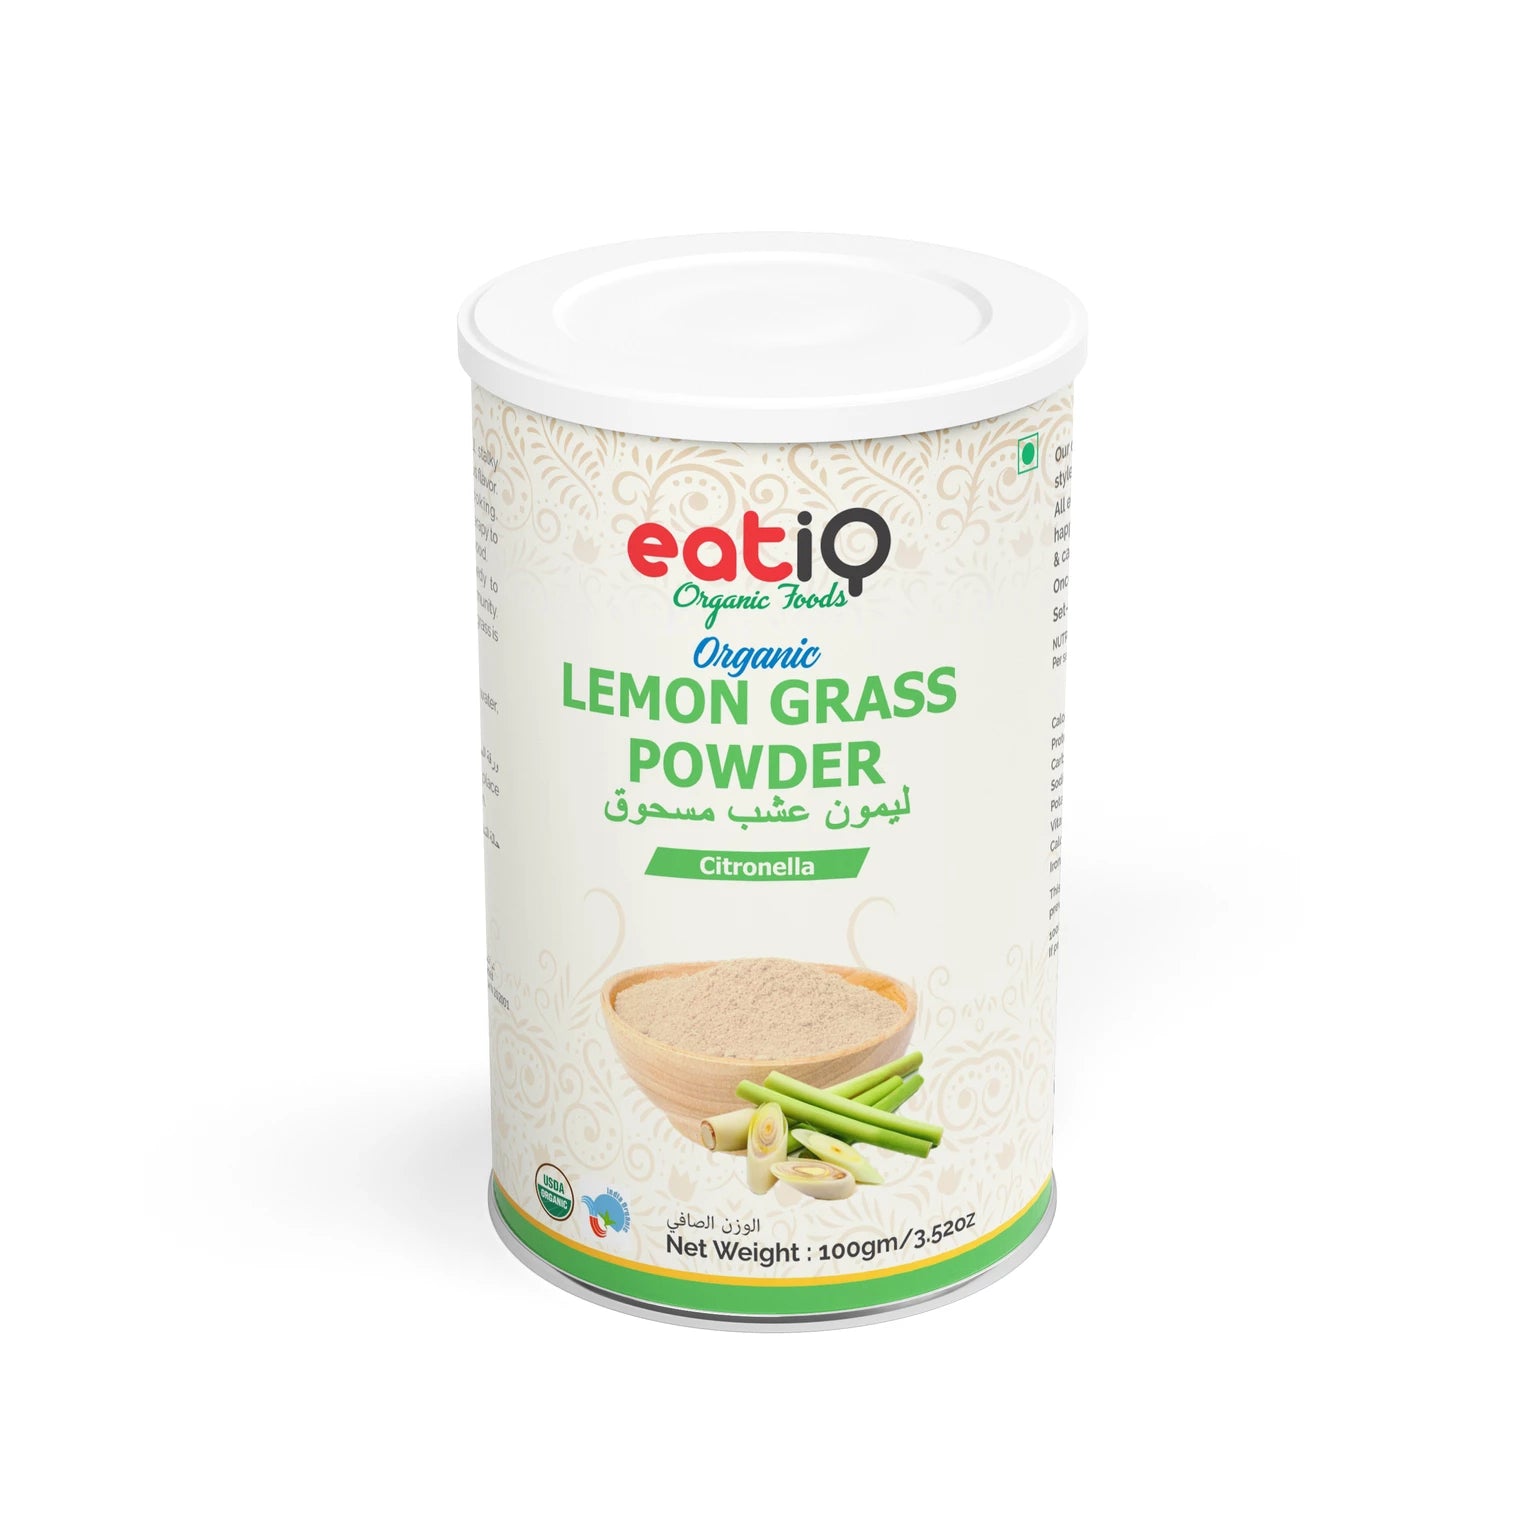 EATIQ Organic Lemon Grass Powder, 100g